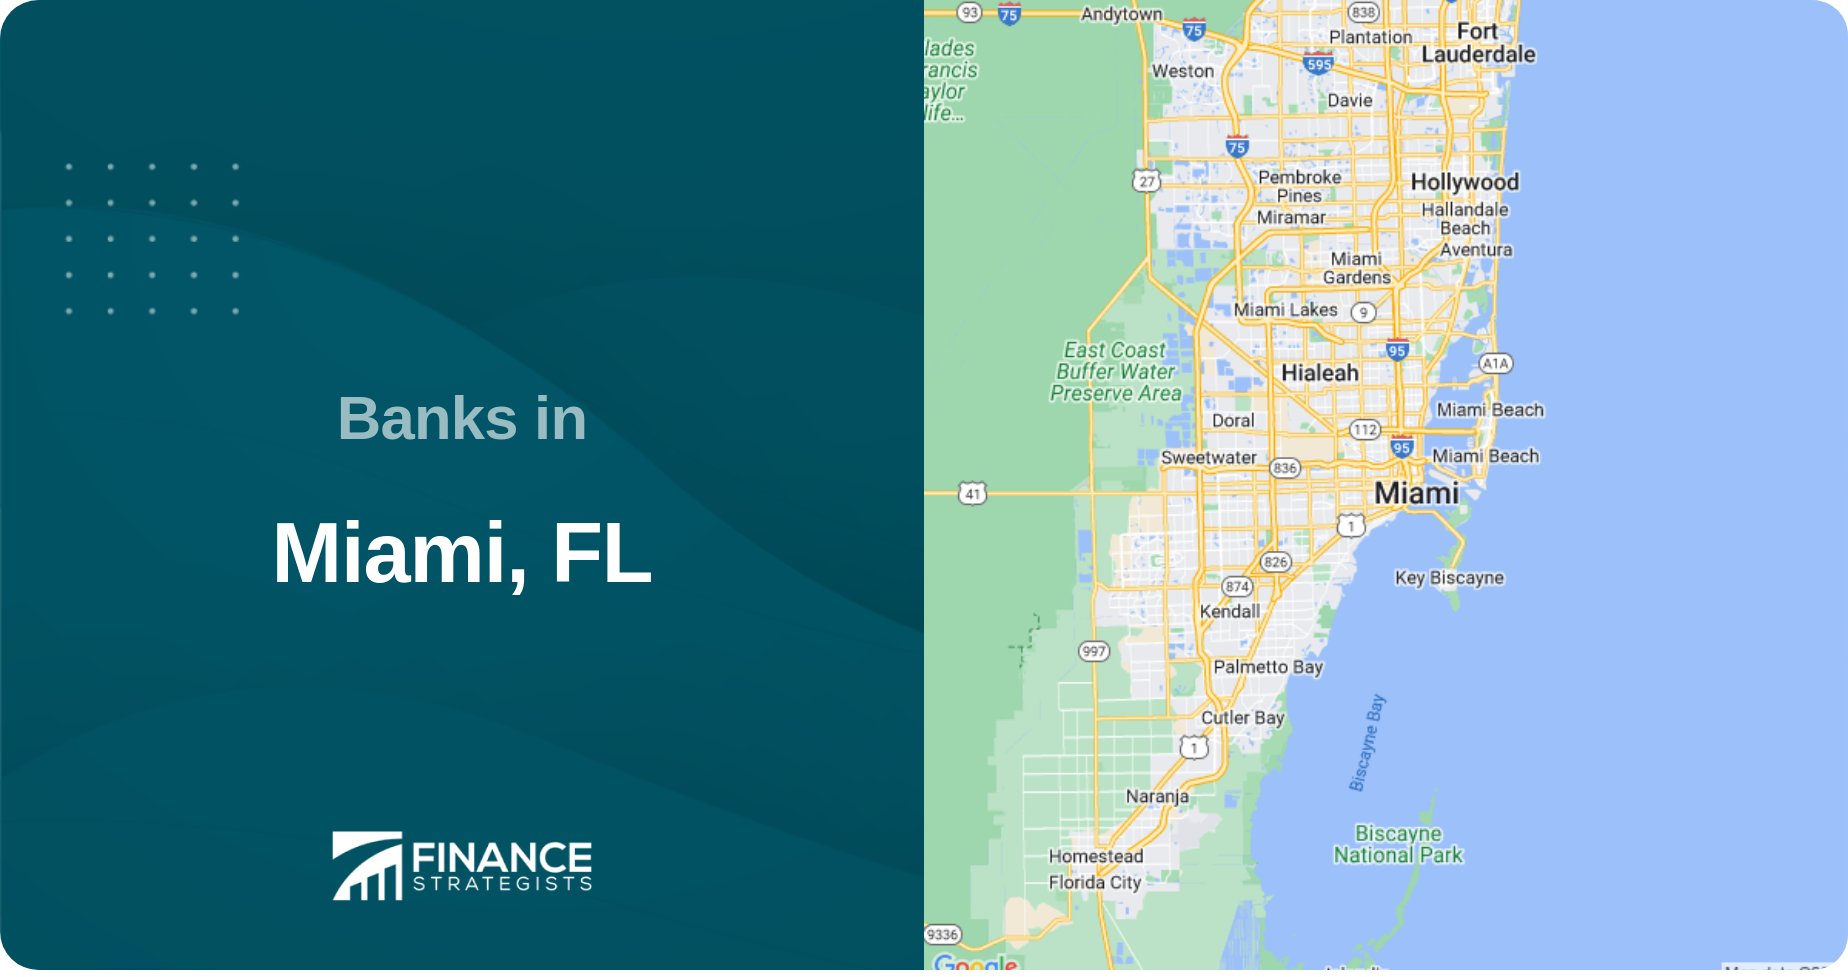 Banks in Miami, FL